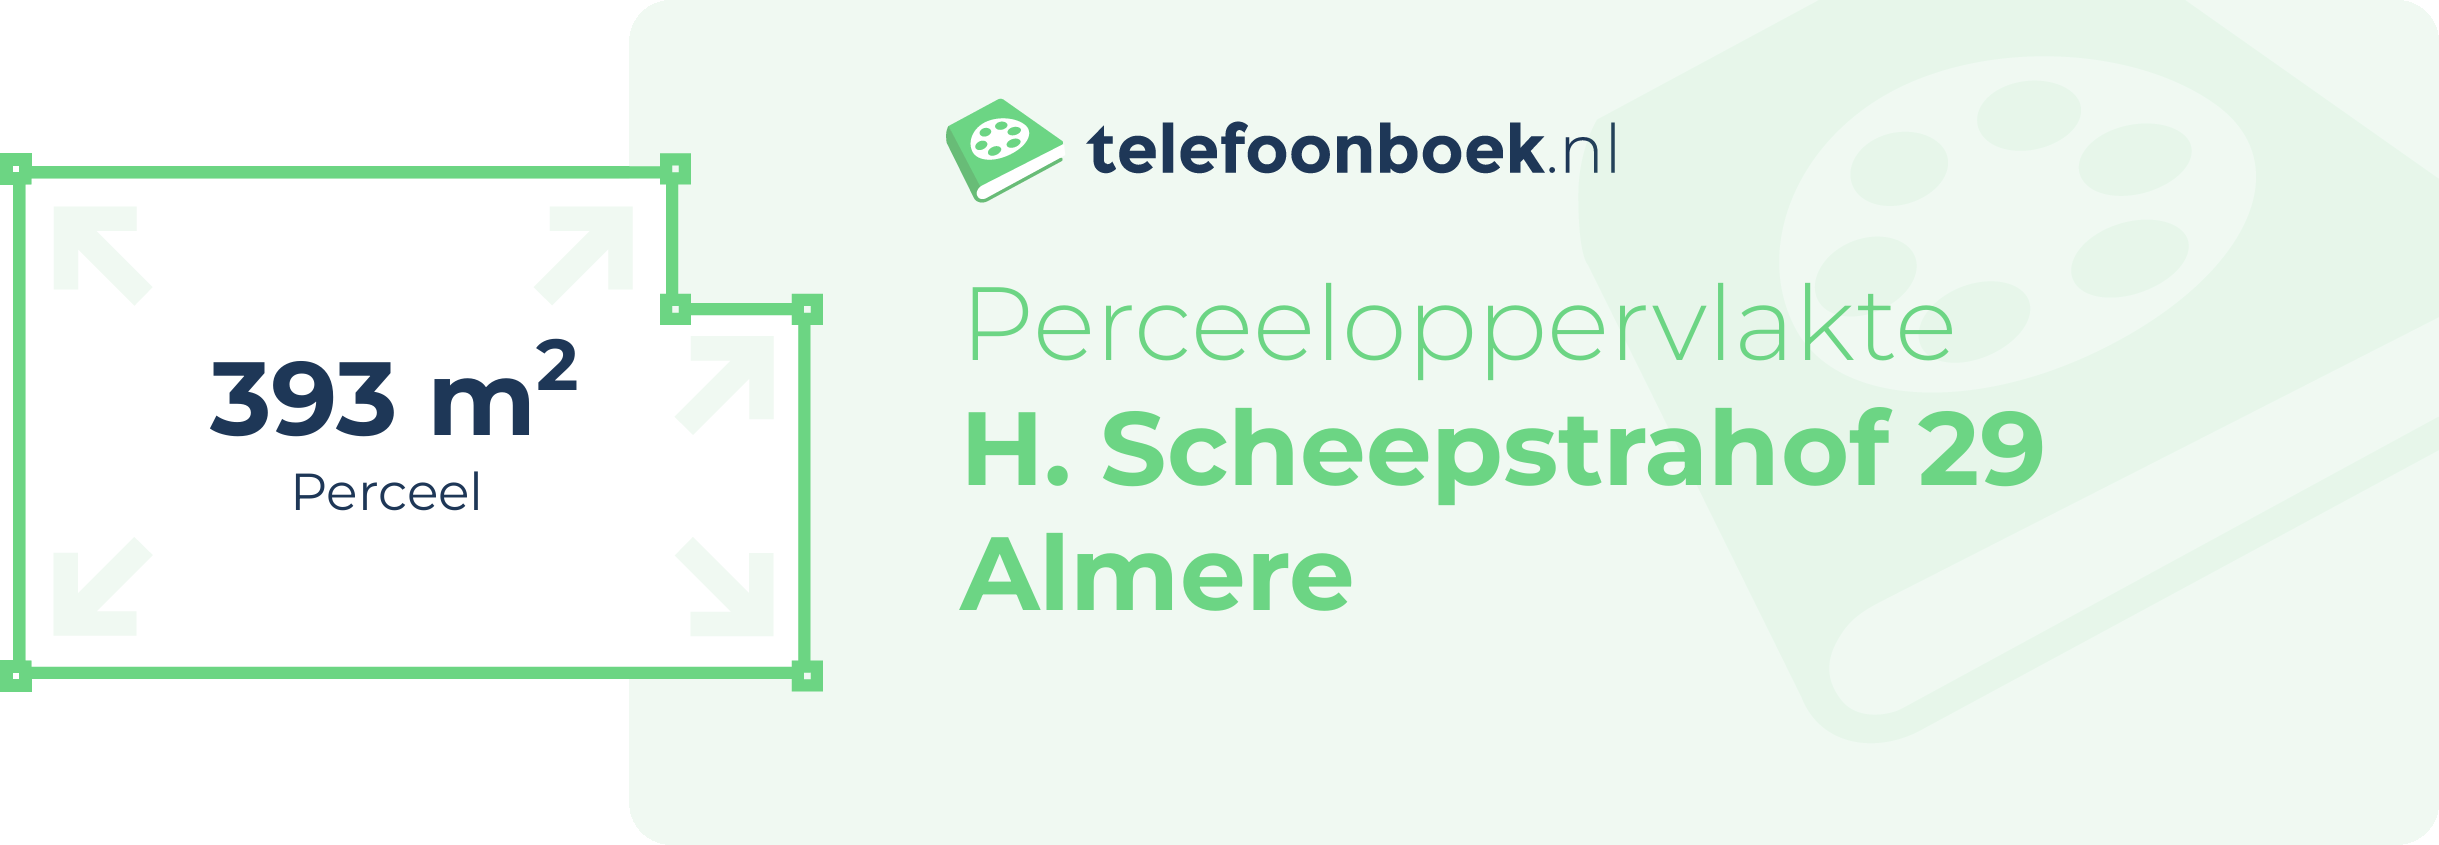 Perceeloppervlakte H. Scheepstrahof 29 Almere